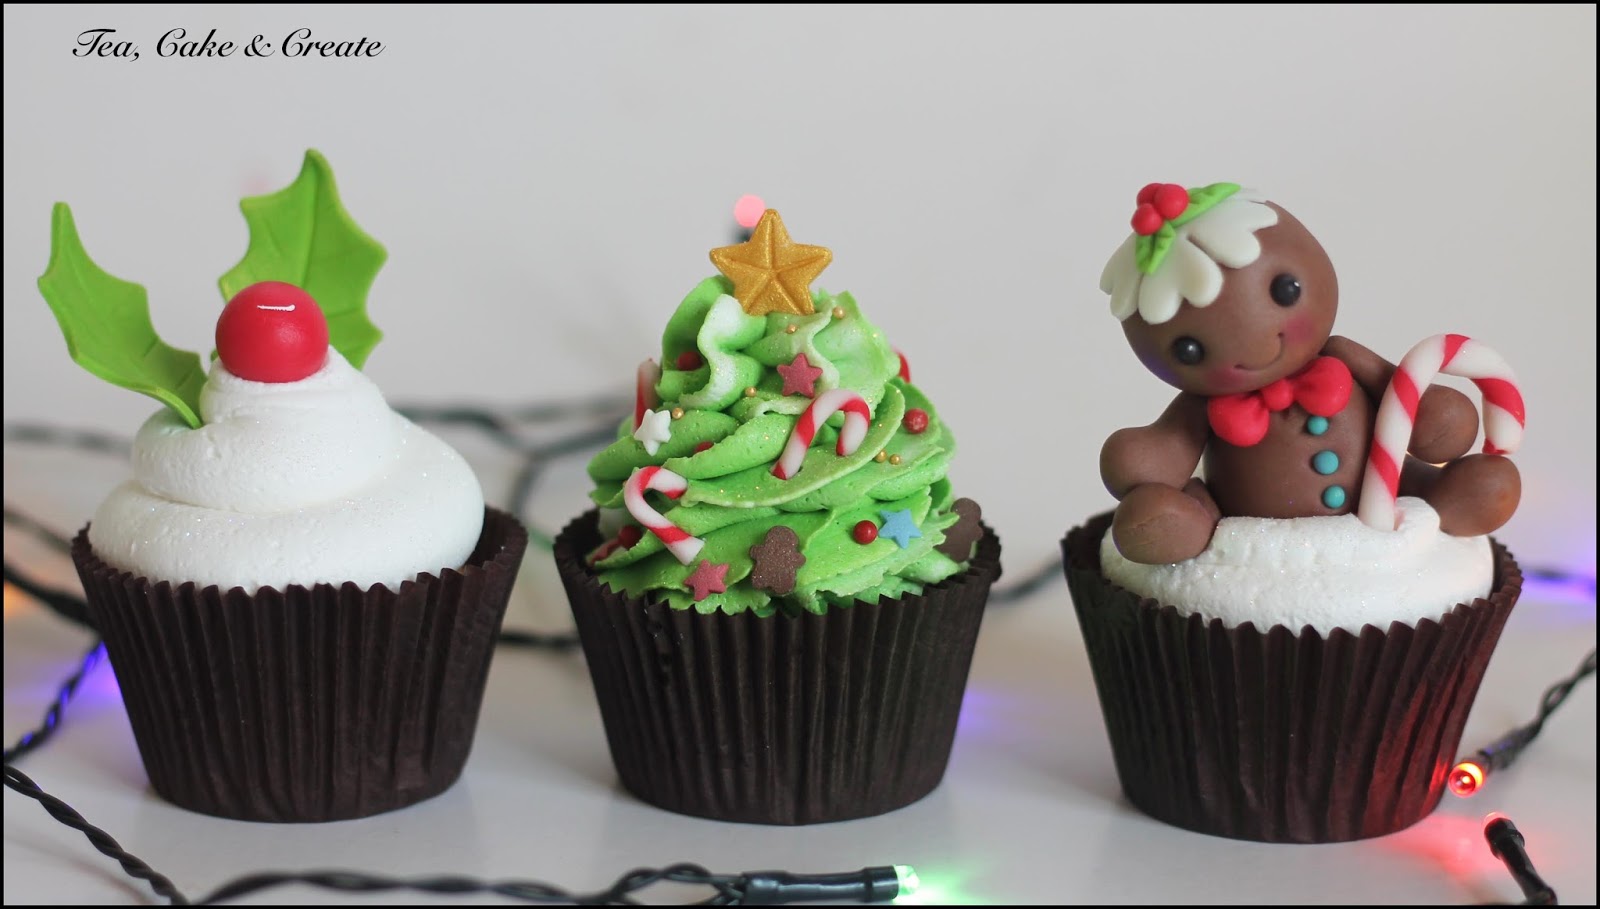 Tea, Cake & Create: Christmas Cupcakes 2015